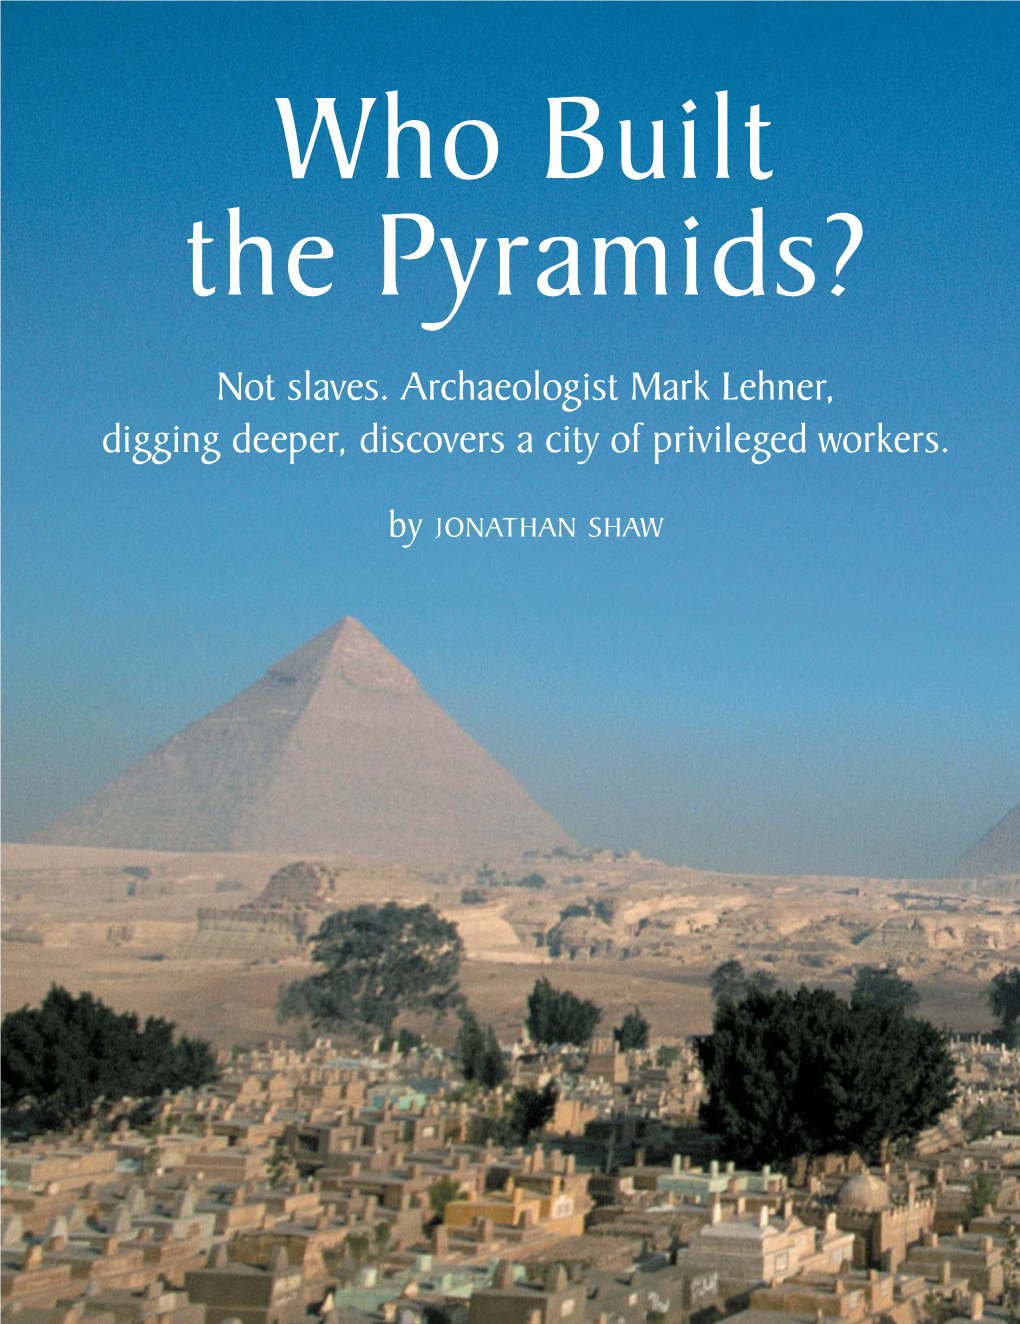 Jonathan Shaw, Who Built the Pyramids